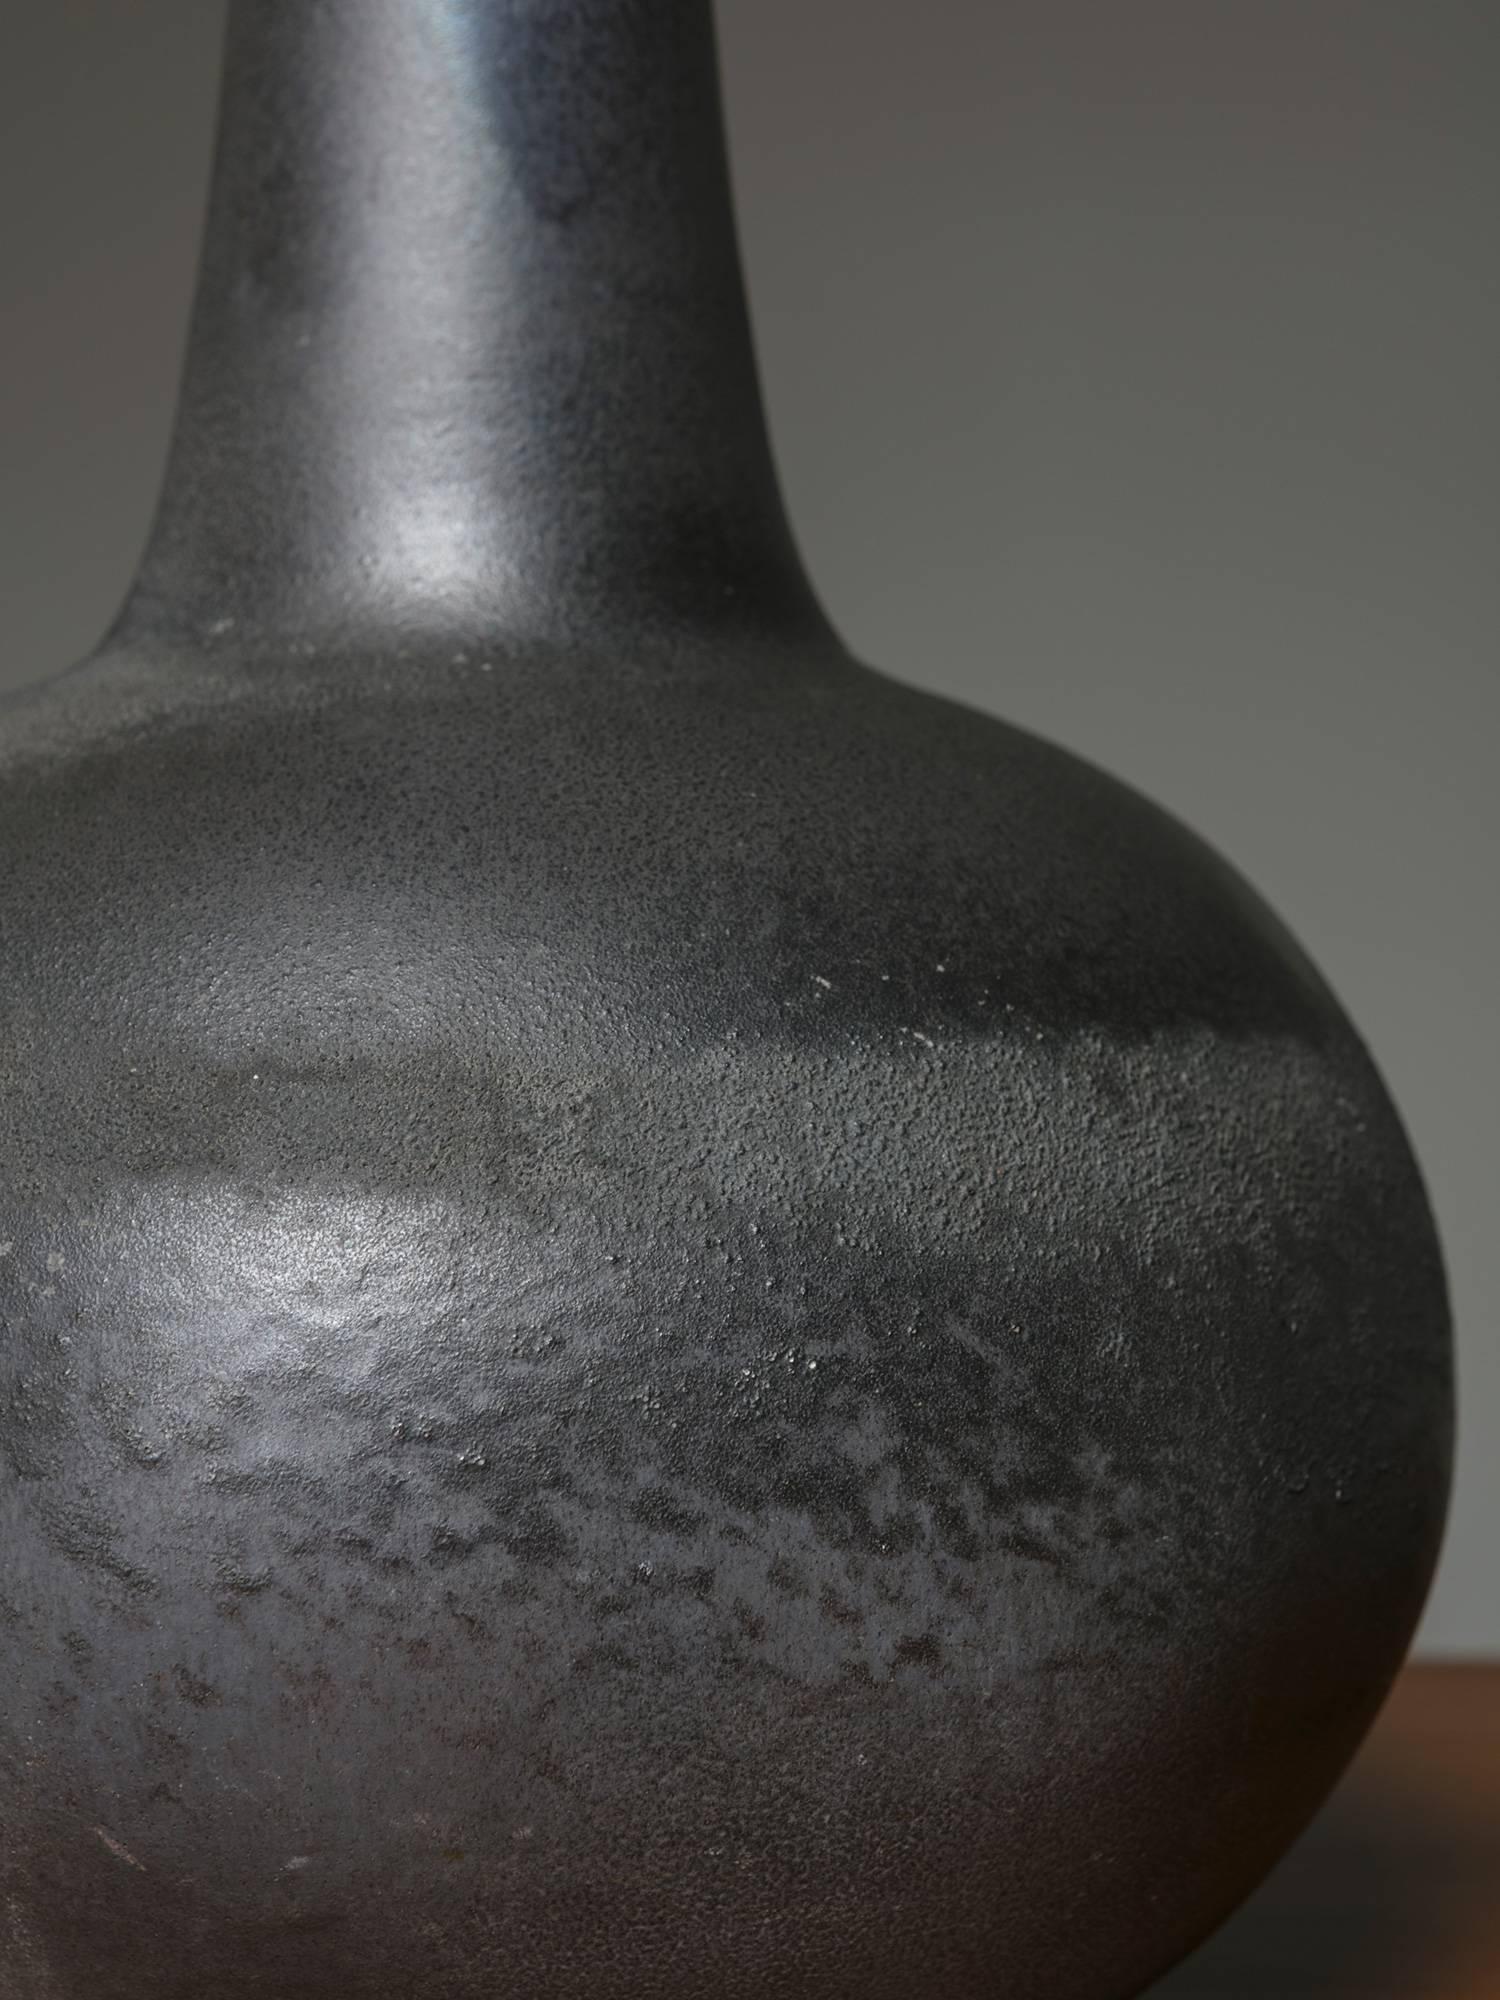 Bemerkenswerte Keramikvase mit feiner Oberflächenbearbeitung.